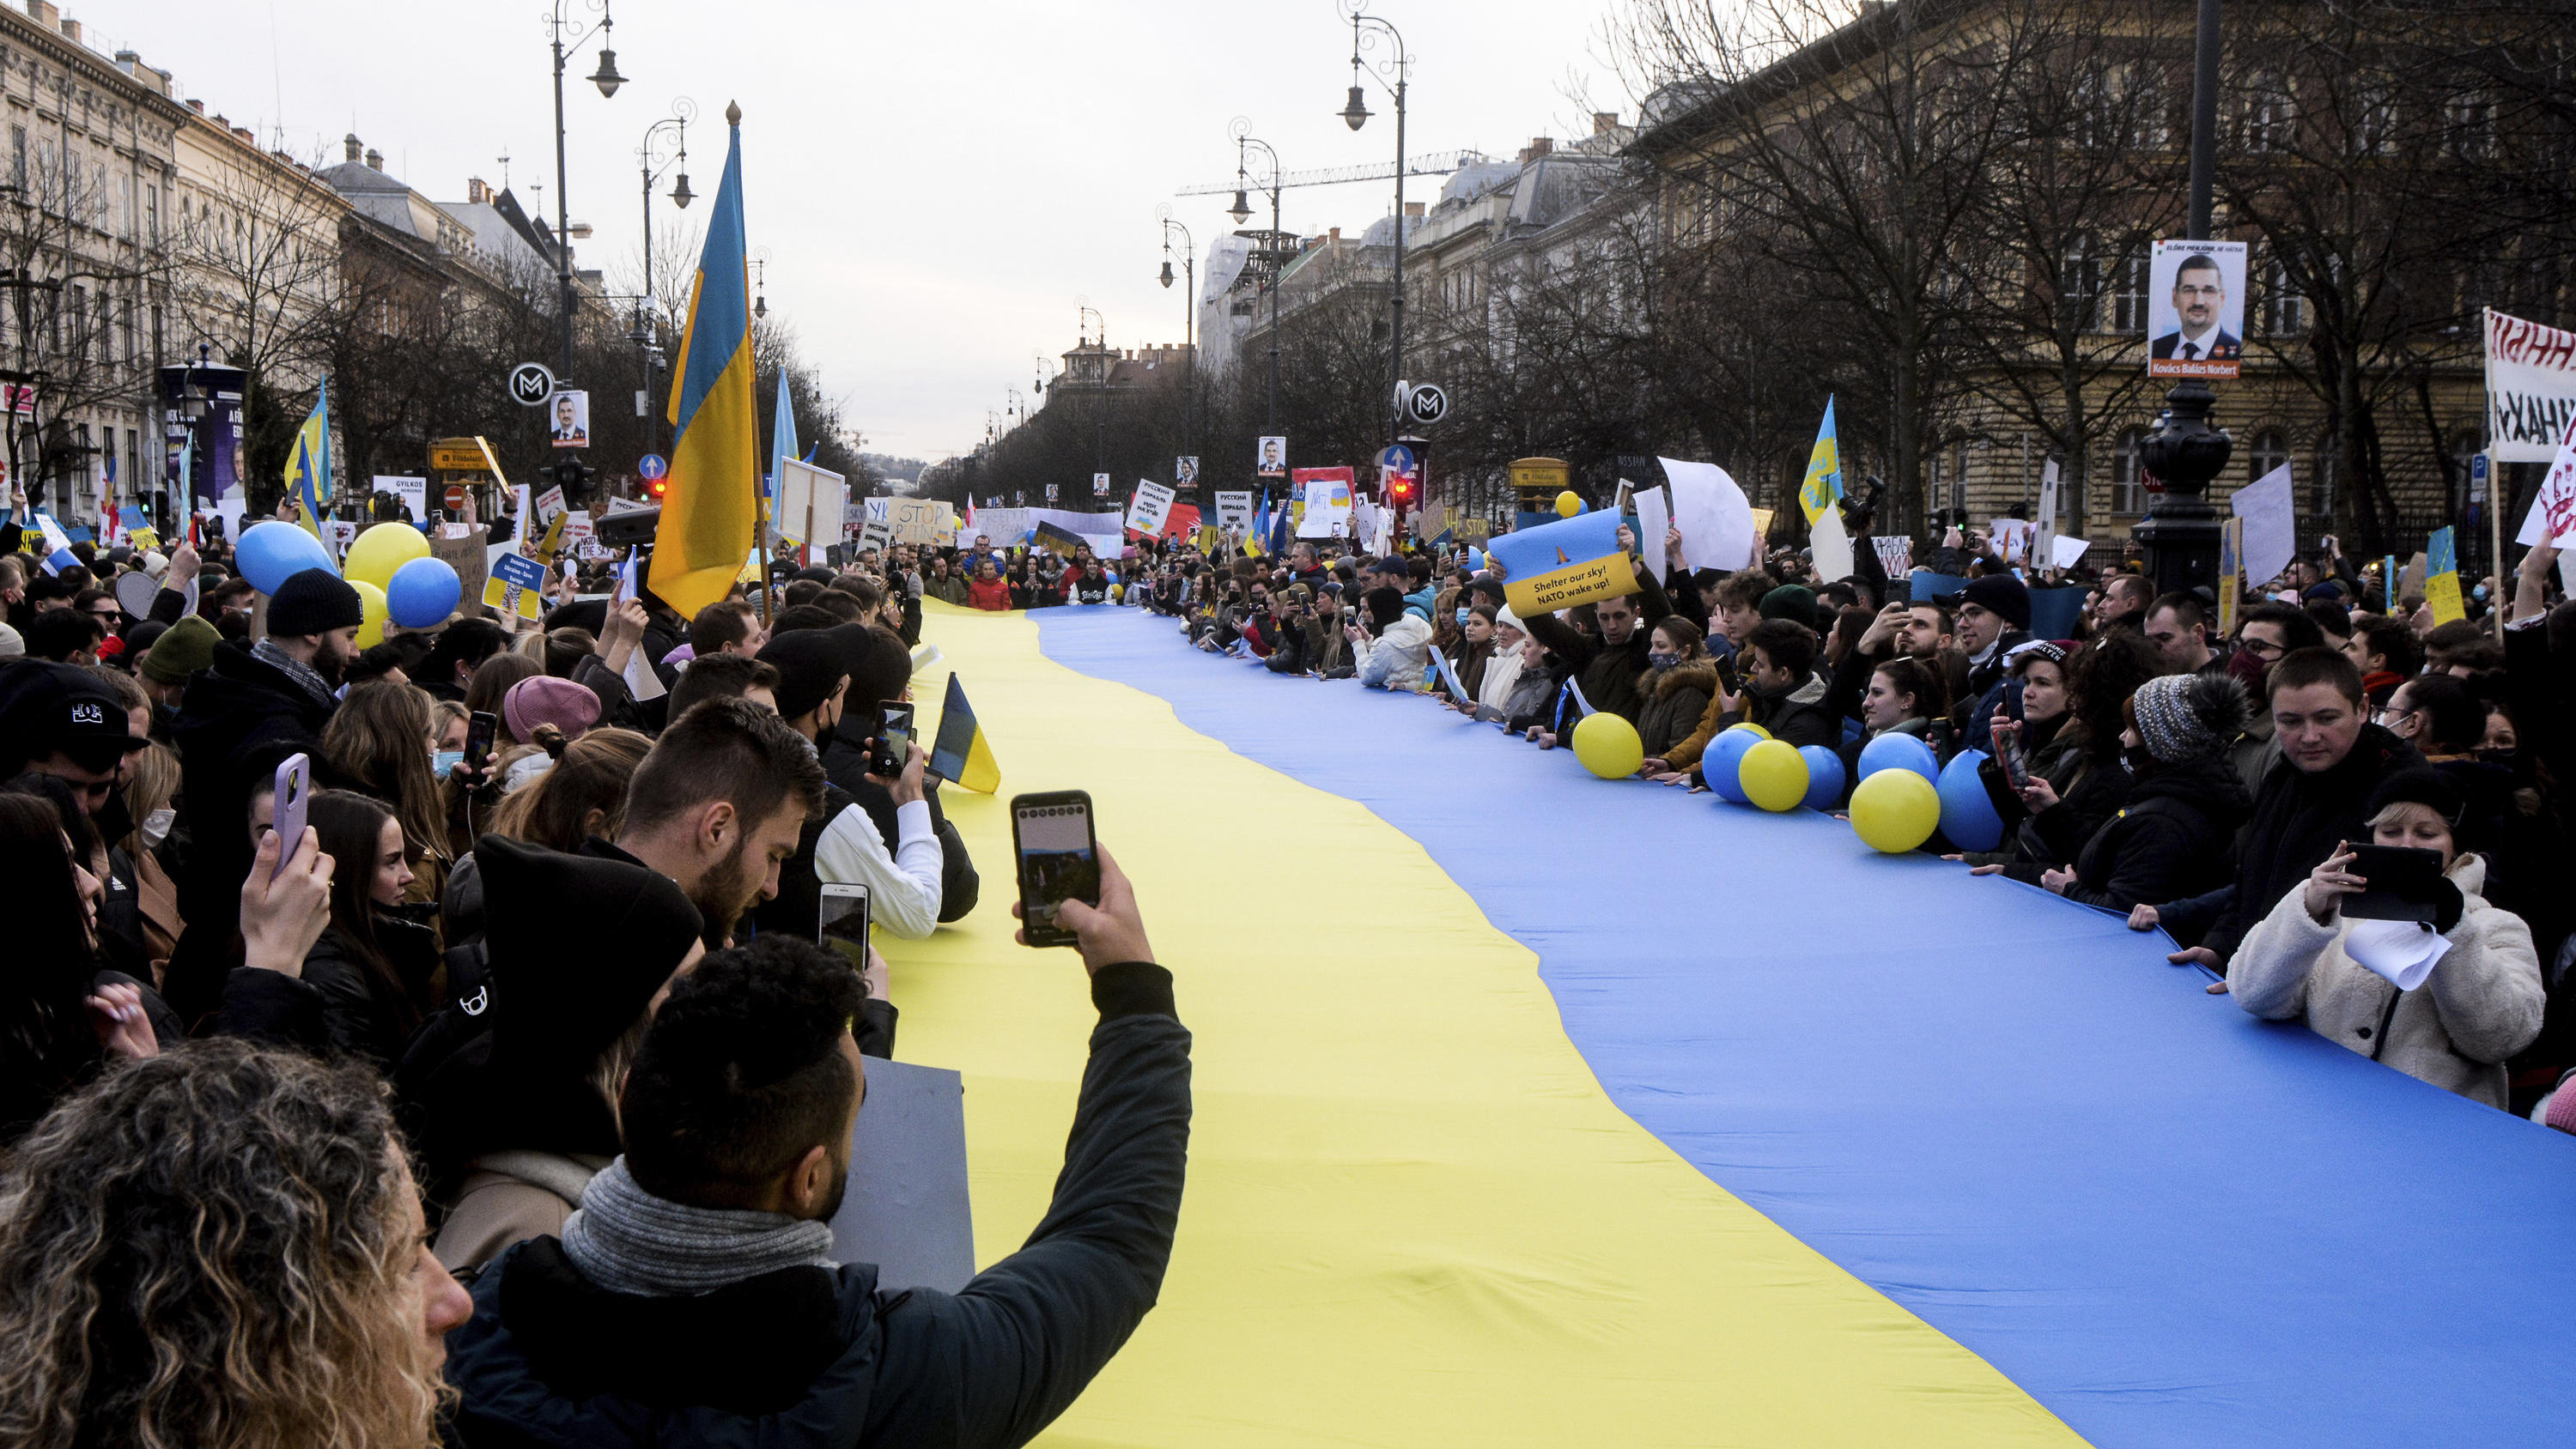 26.02.2022, Ungarn, Budapest: Demonstranten stehen um eine große ukrainische Flagge versammelt und protestieren gegen den russischen Einmarsch in die Ukraine. Russische Truppen haben den erwarteten Angriff auf die Ukraine gestartet und drangen in die